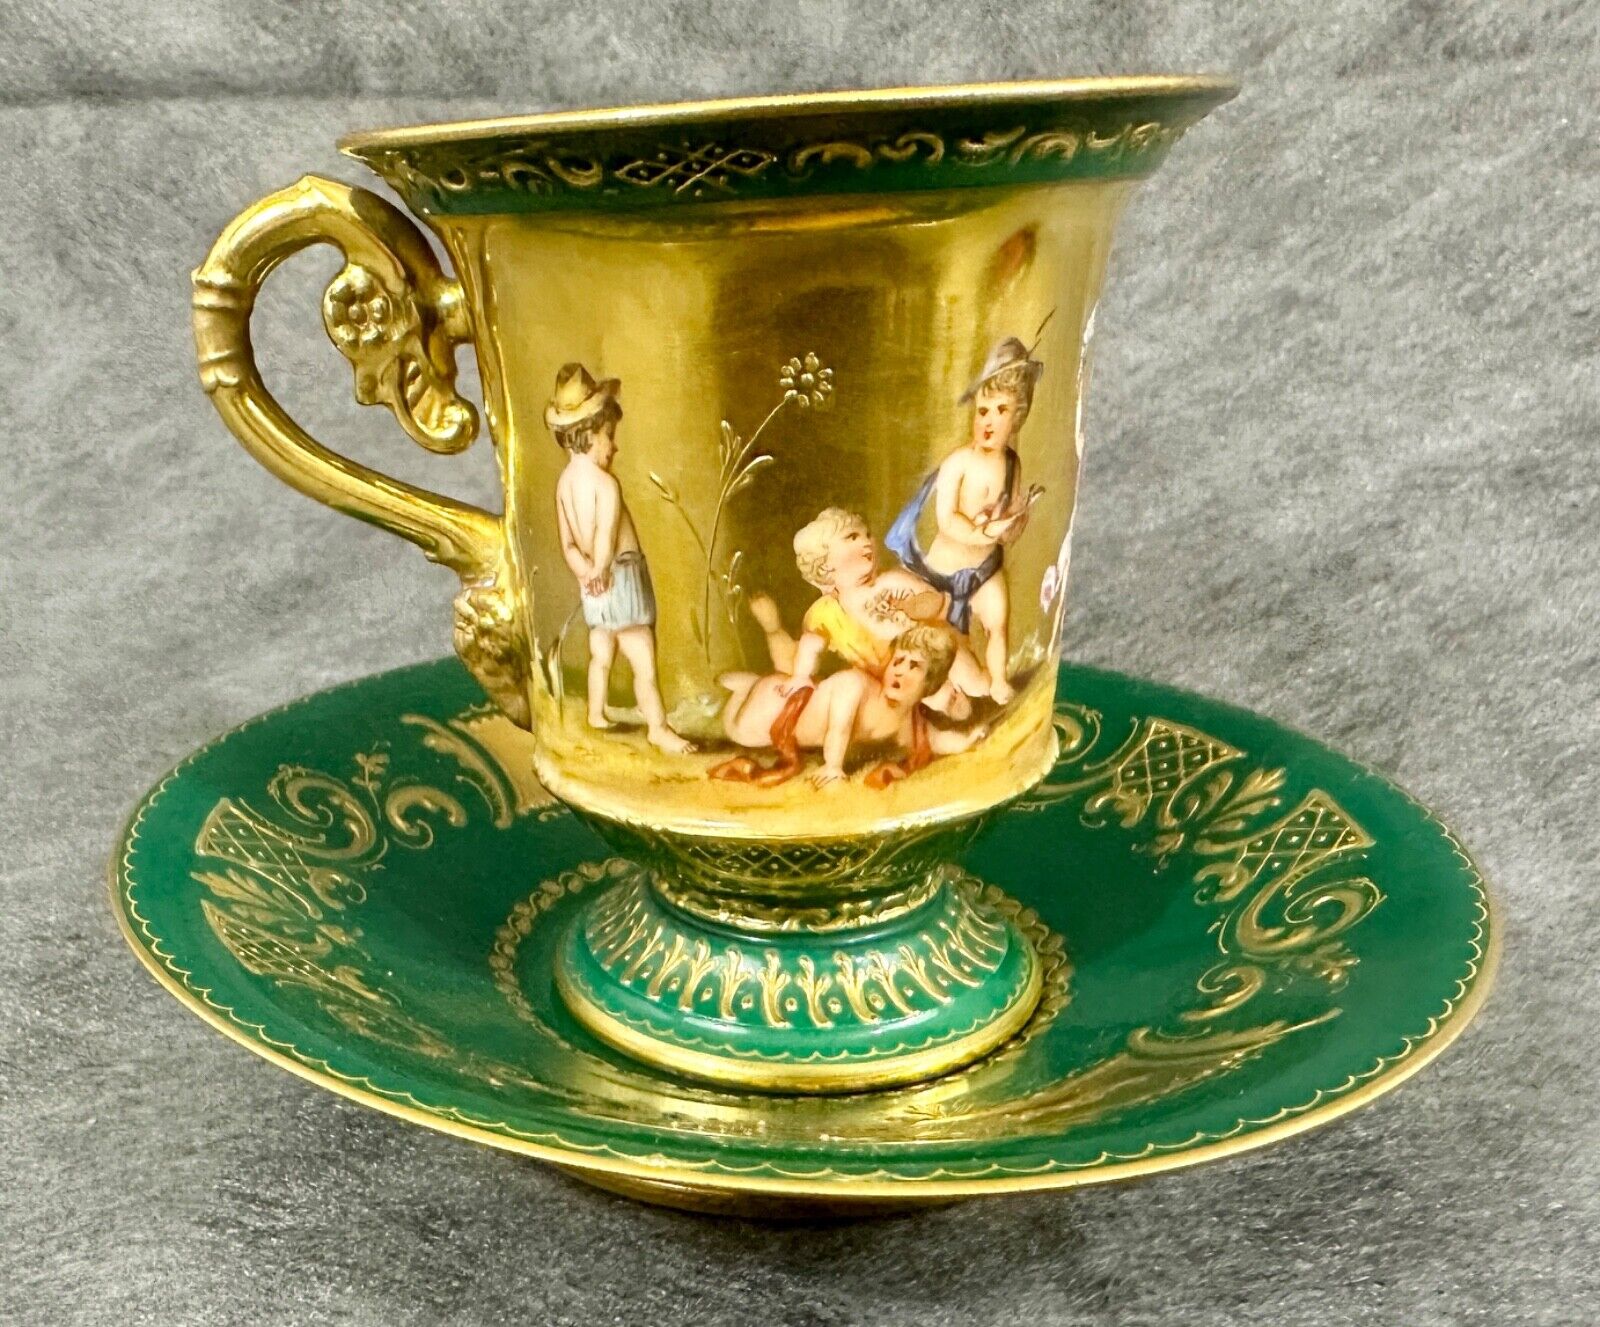 Austrian Royal Vienna (Style?) Green Porcelain Gold Gilt Cup & Saucer Cherubs